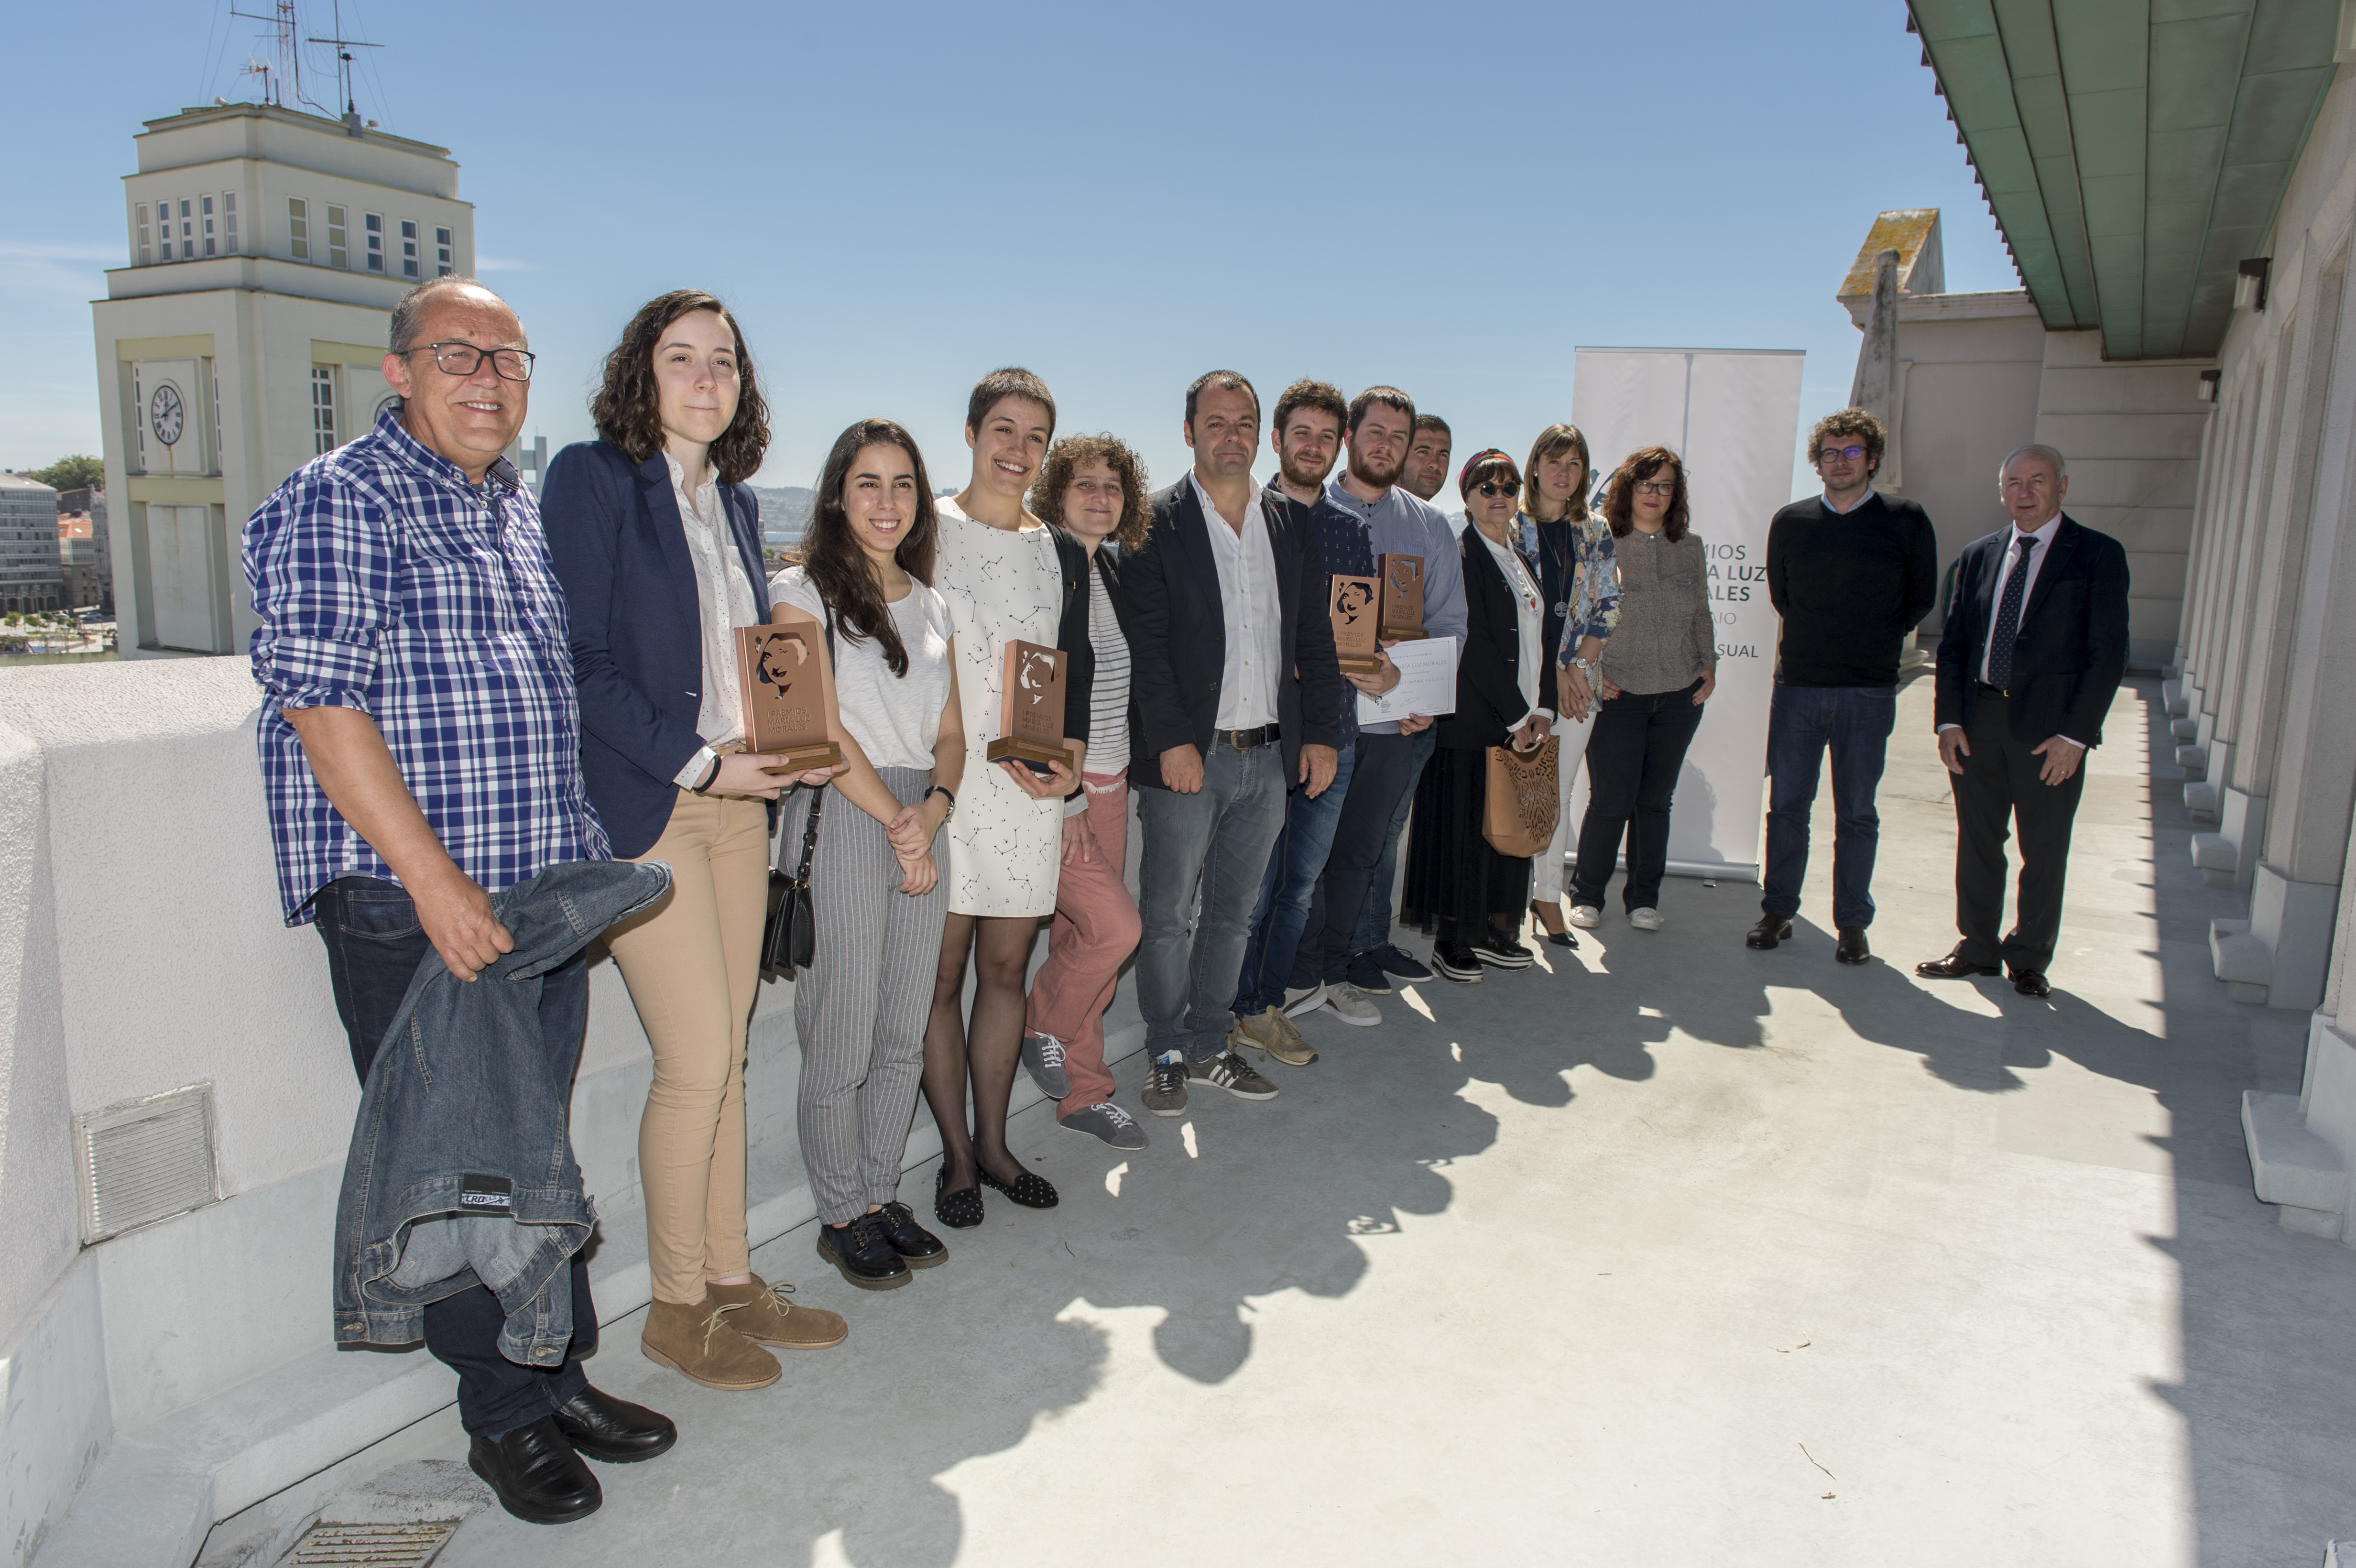 La Academia Galega do Audiovisual y las cuatro diputaciones premian la labor de cinco jóvenes investigadores gallegos